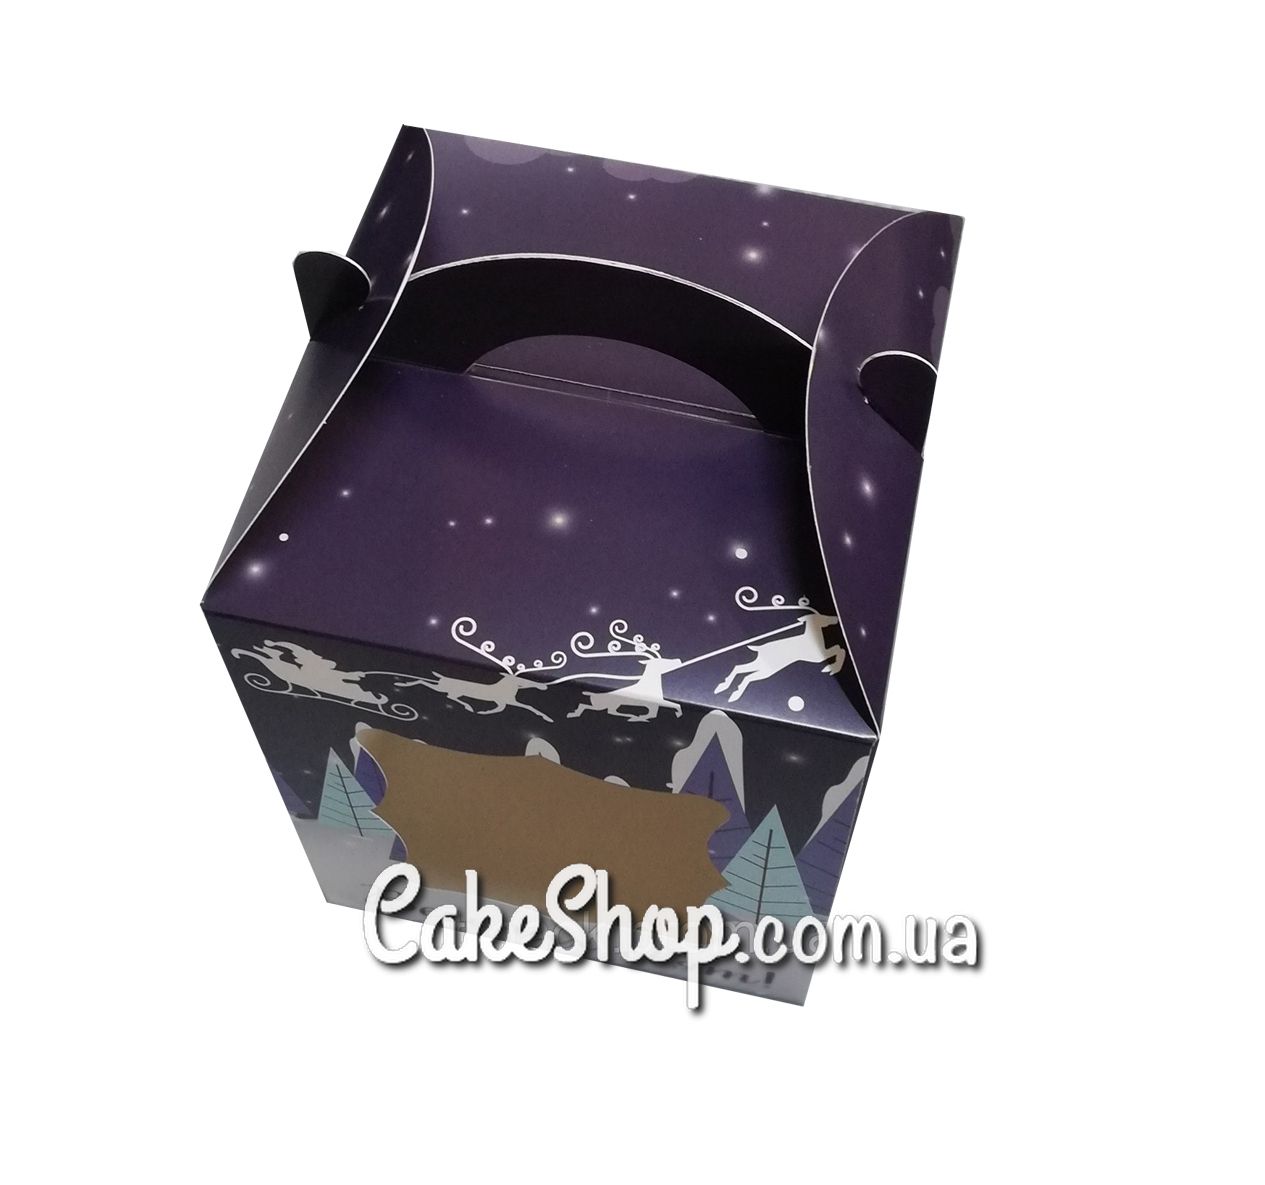 ⋗ Коробка для пряничного домика Новогодняя, 17х17х21 см купить в Украине ➛ CakeShop.com.ua, фото